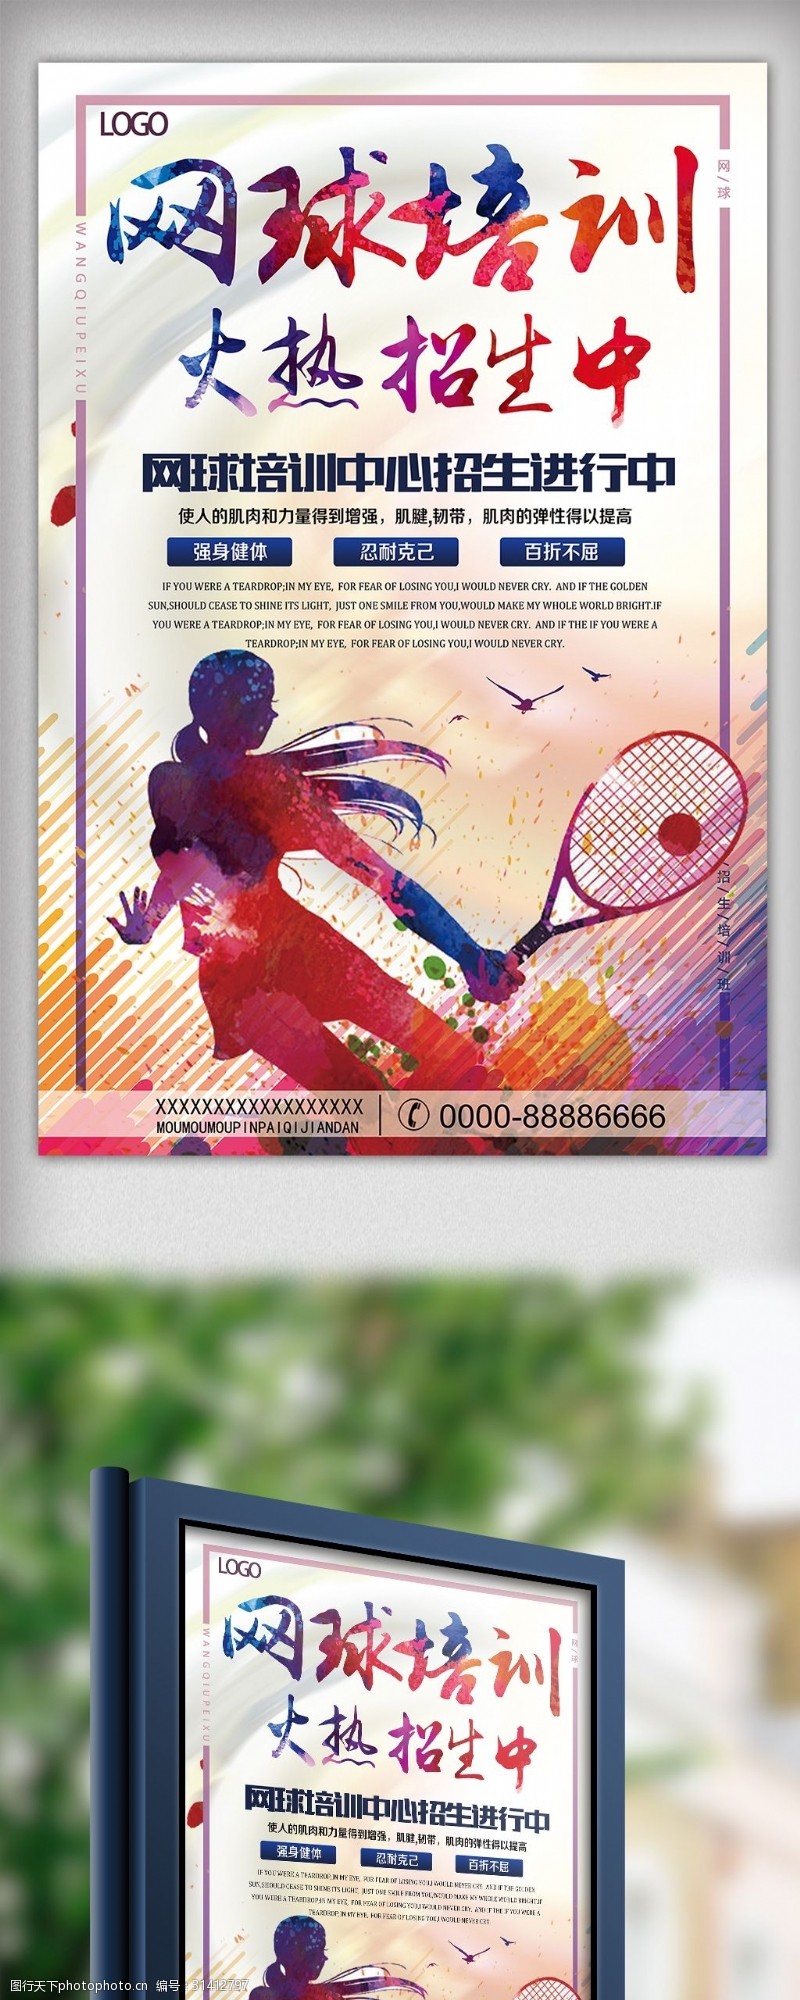 暑假招生模板下载网球培训招生宣传海报模板下载